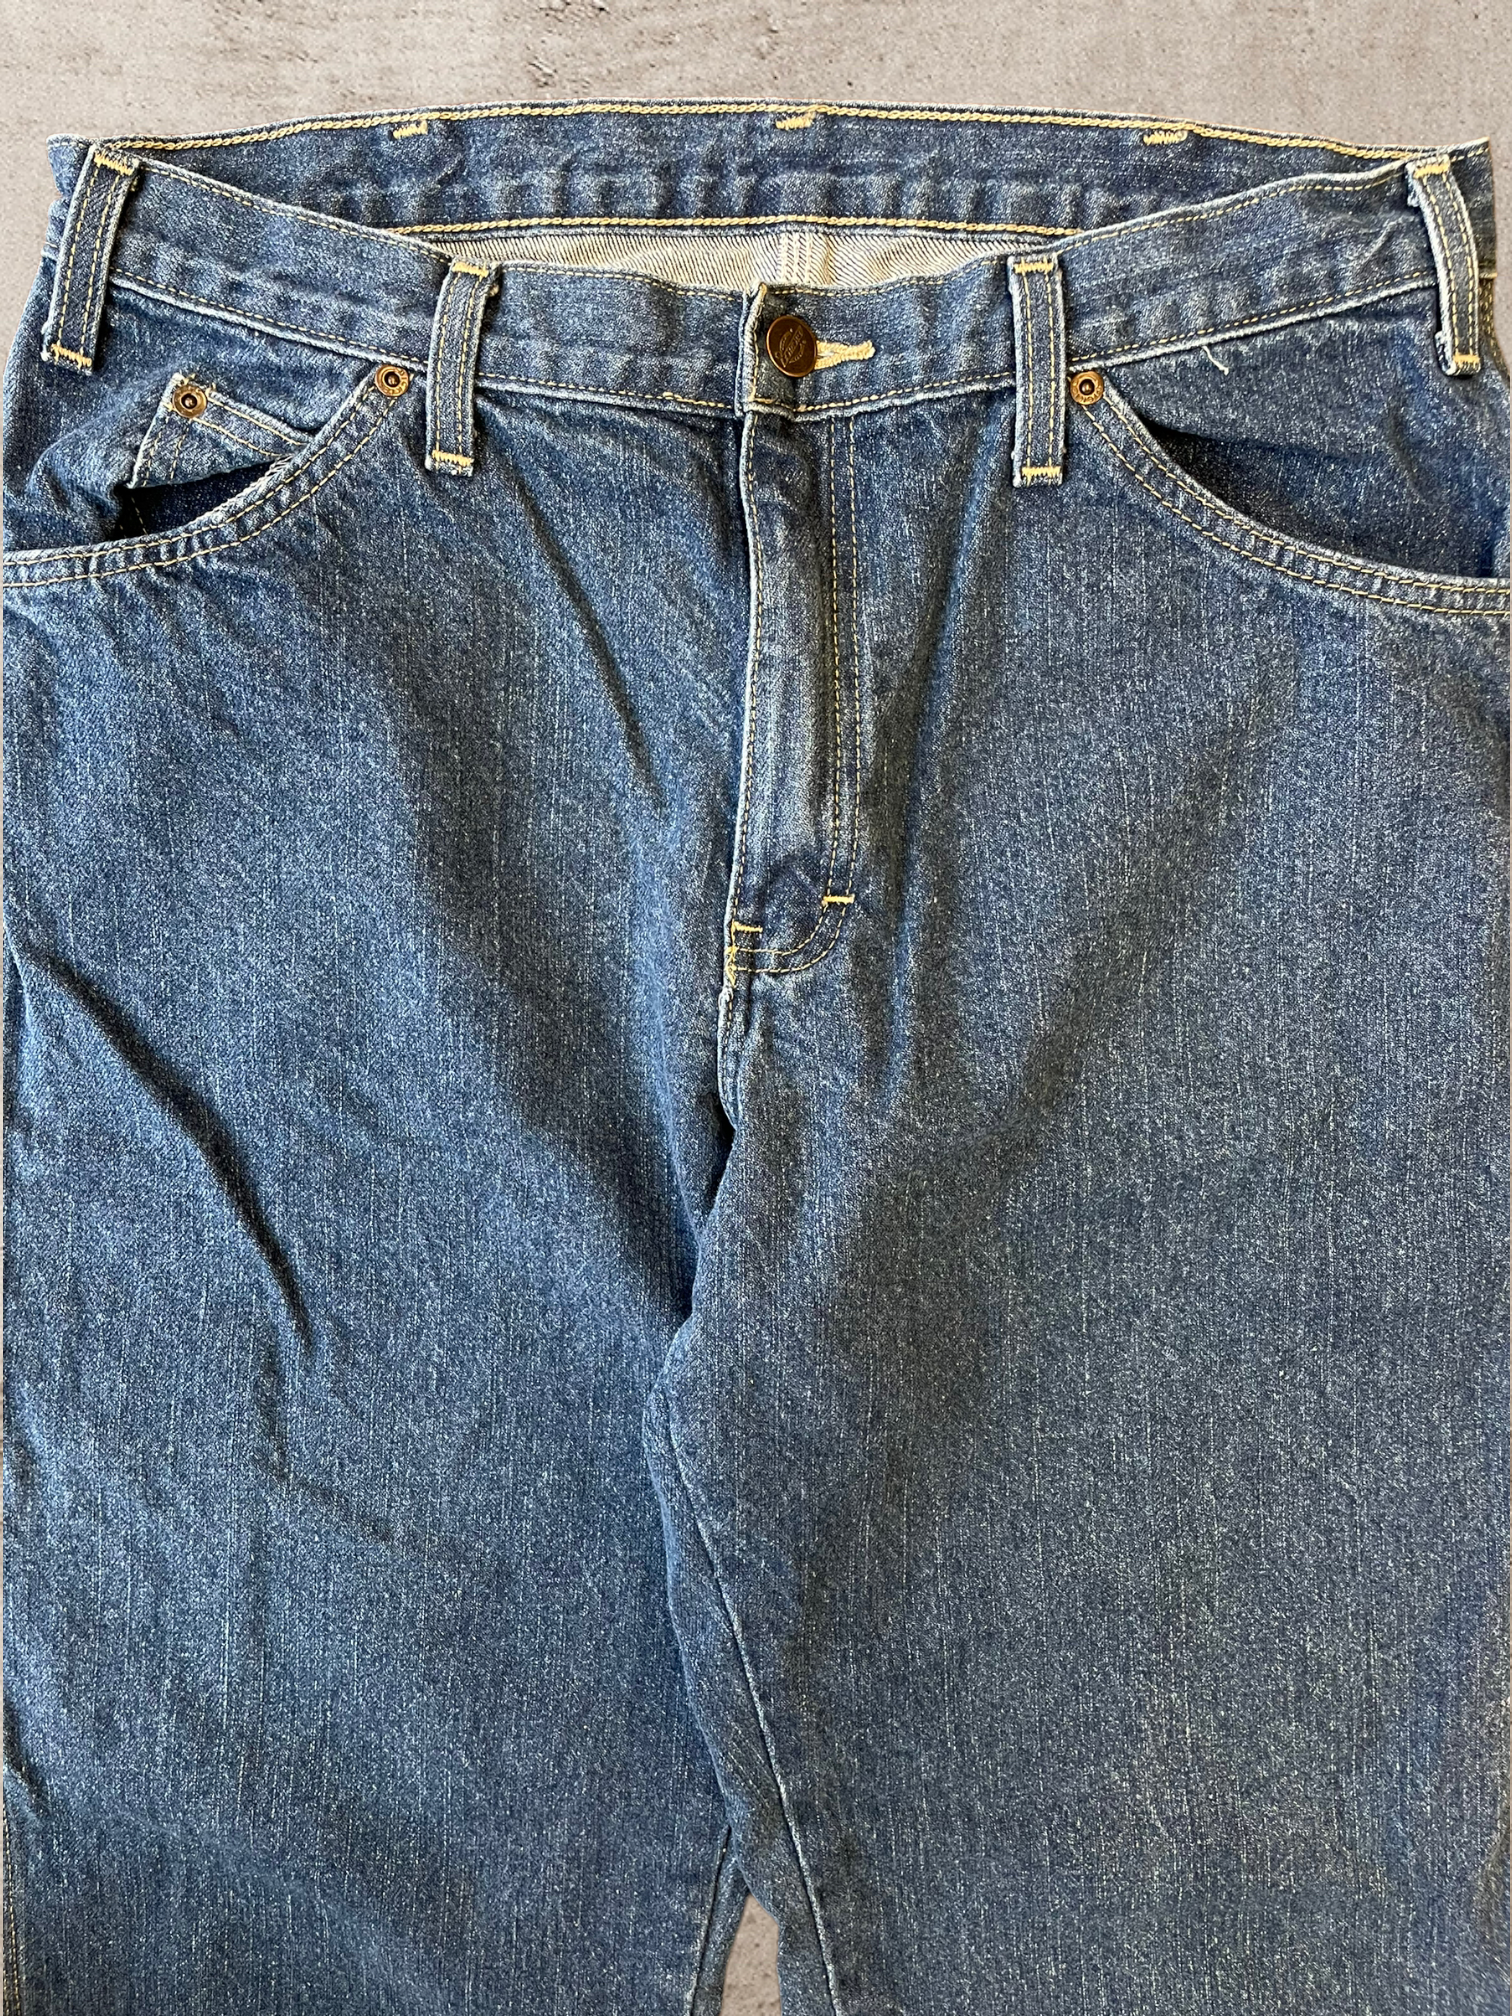 Vintage Dickies Carpenter Jeans - 34x28